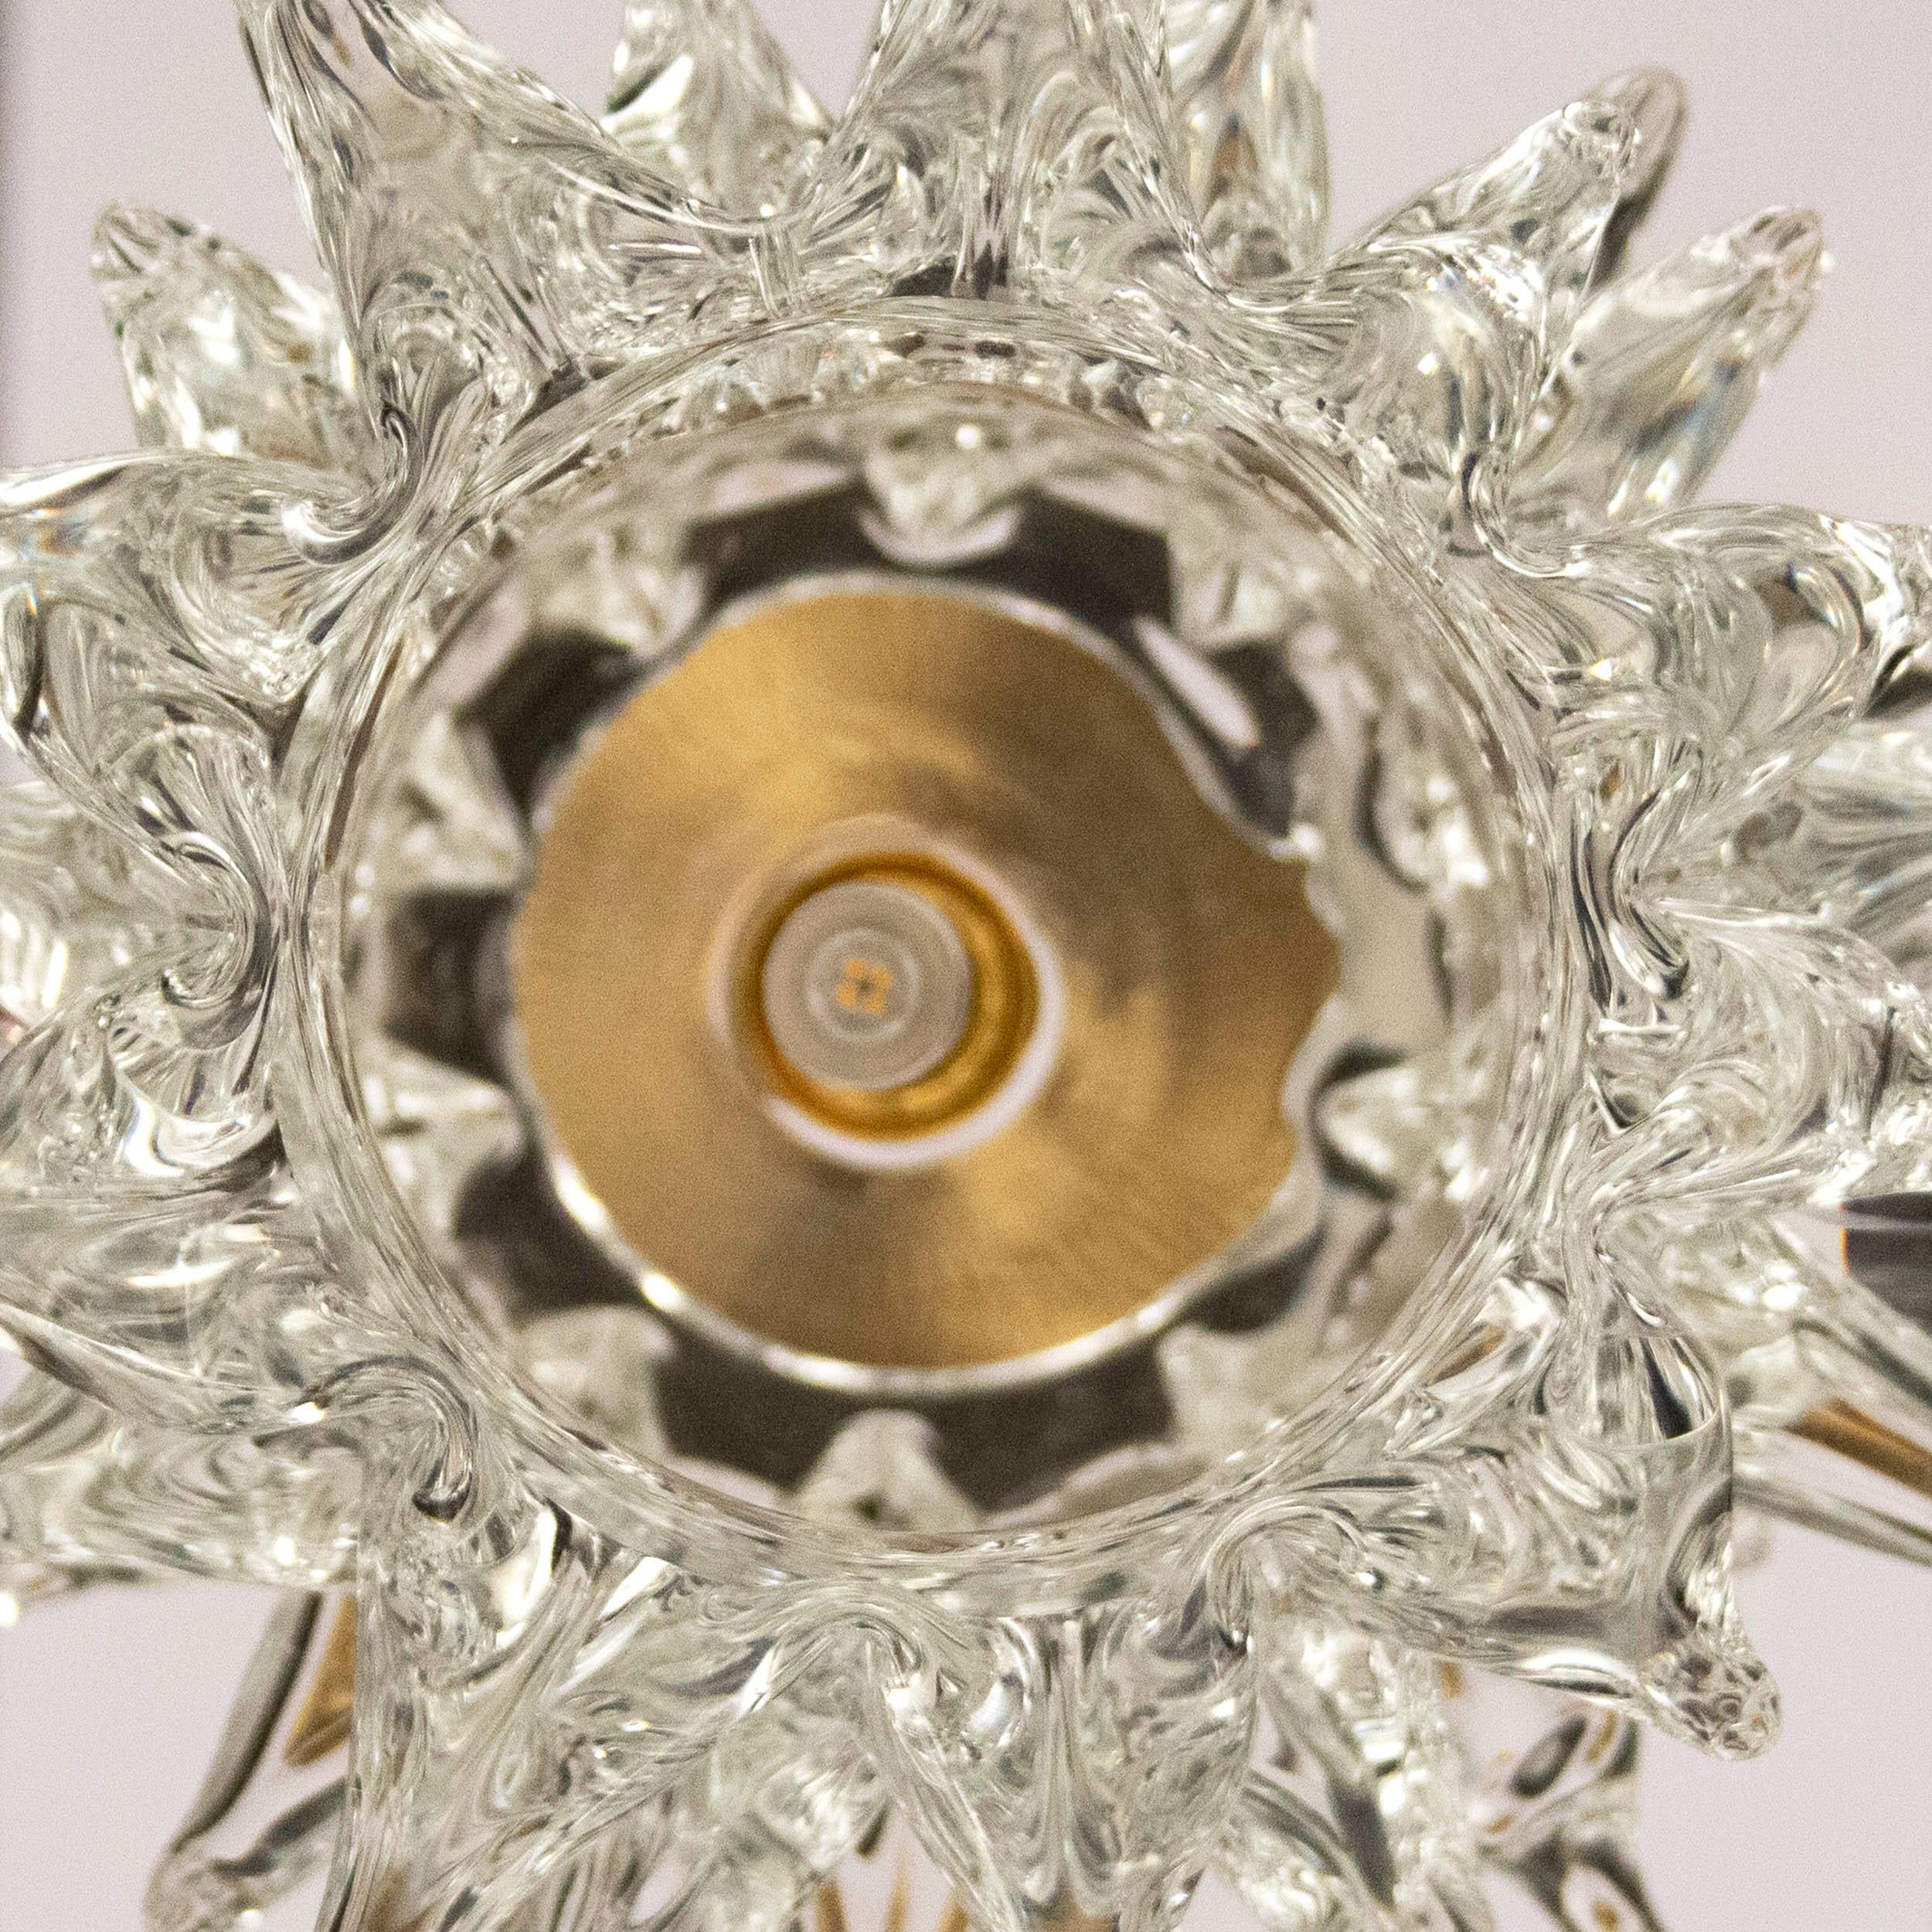 Œuvre d'éclairage précieuse, la suspension Scintilla se distingue par son élégance et son raffinement. Les éléments en verre de cristal sont réalisés selon la technique du 